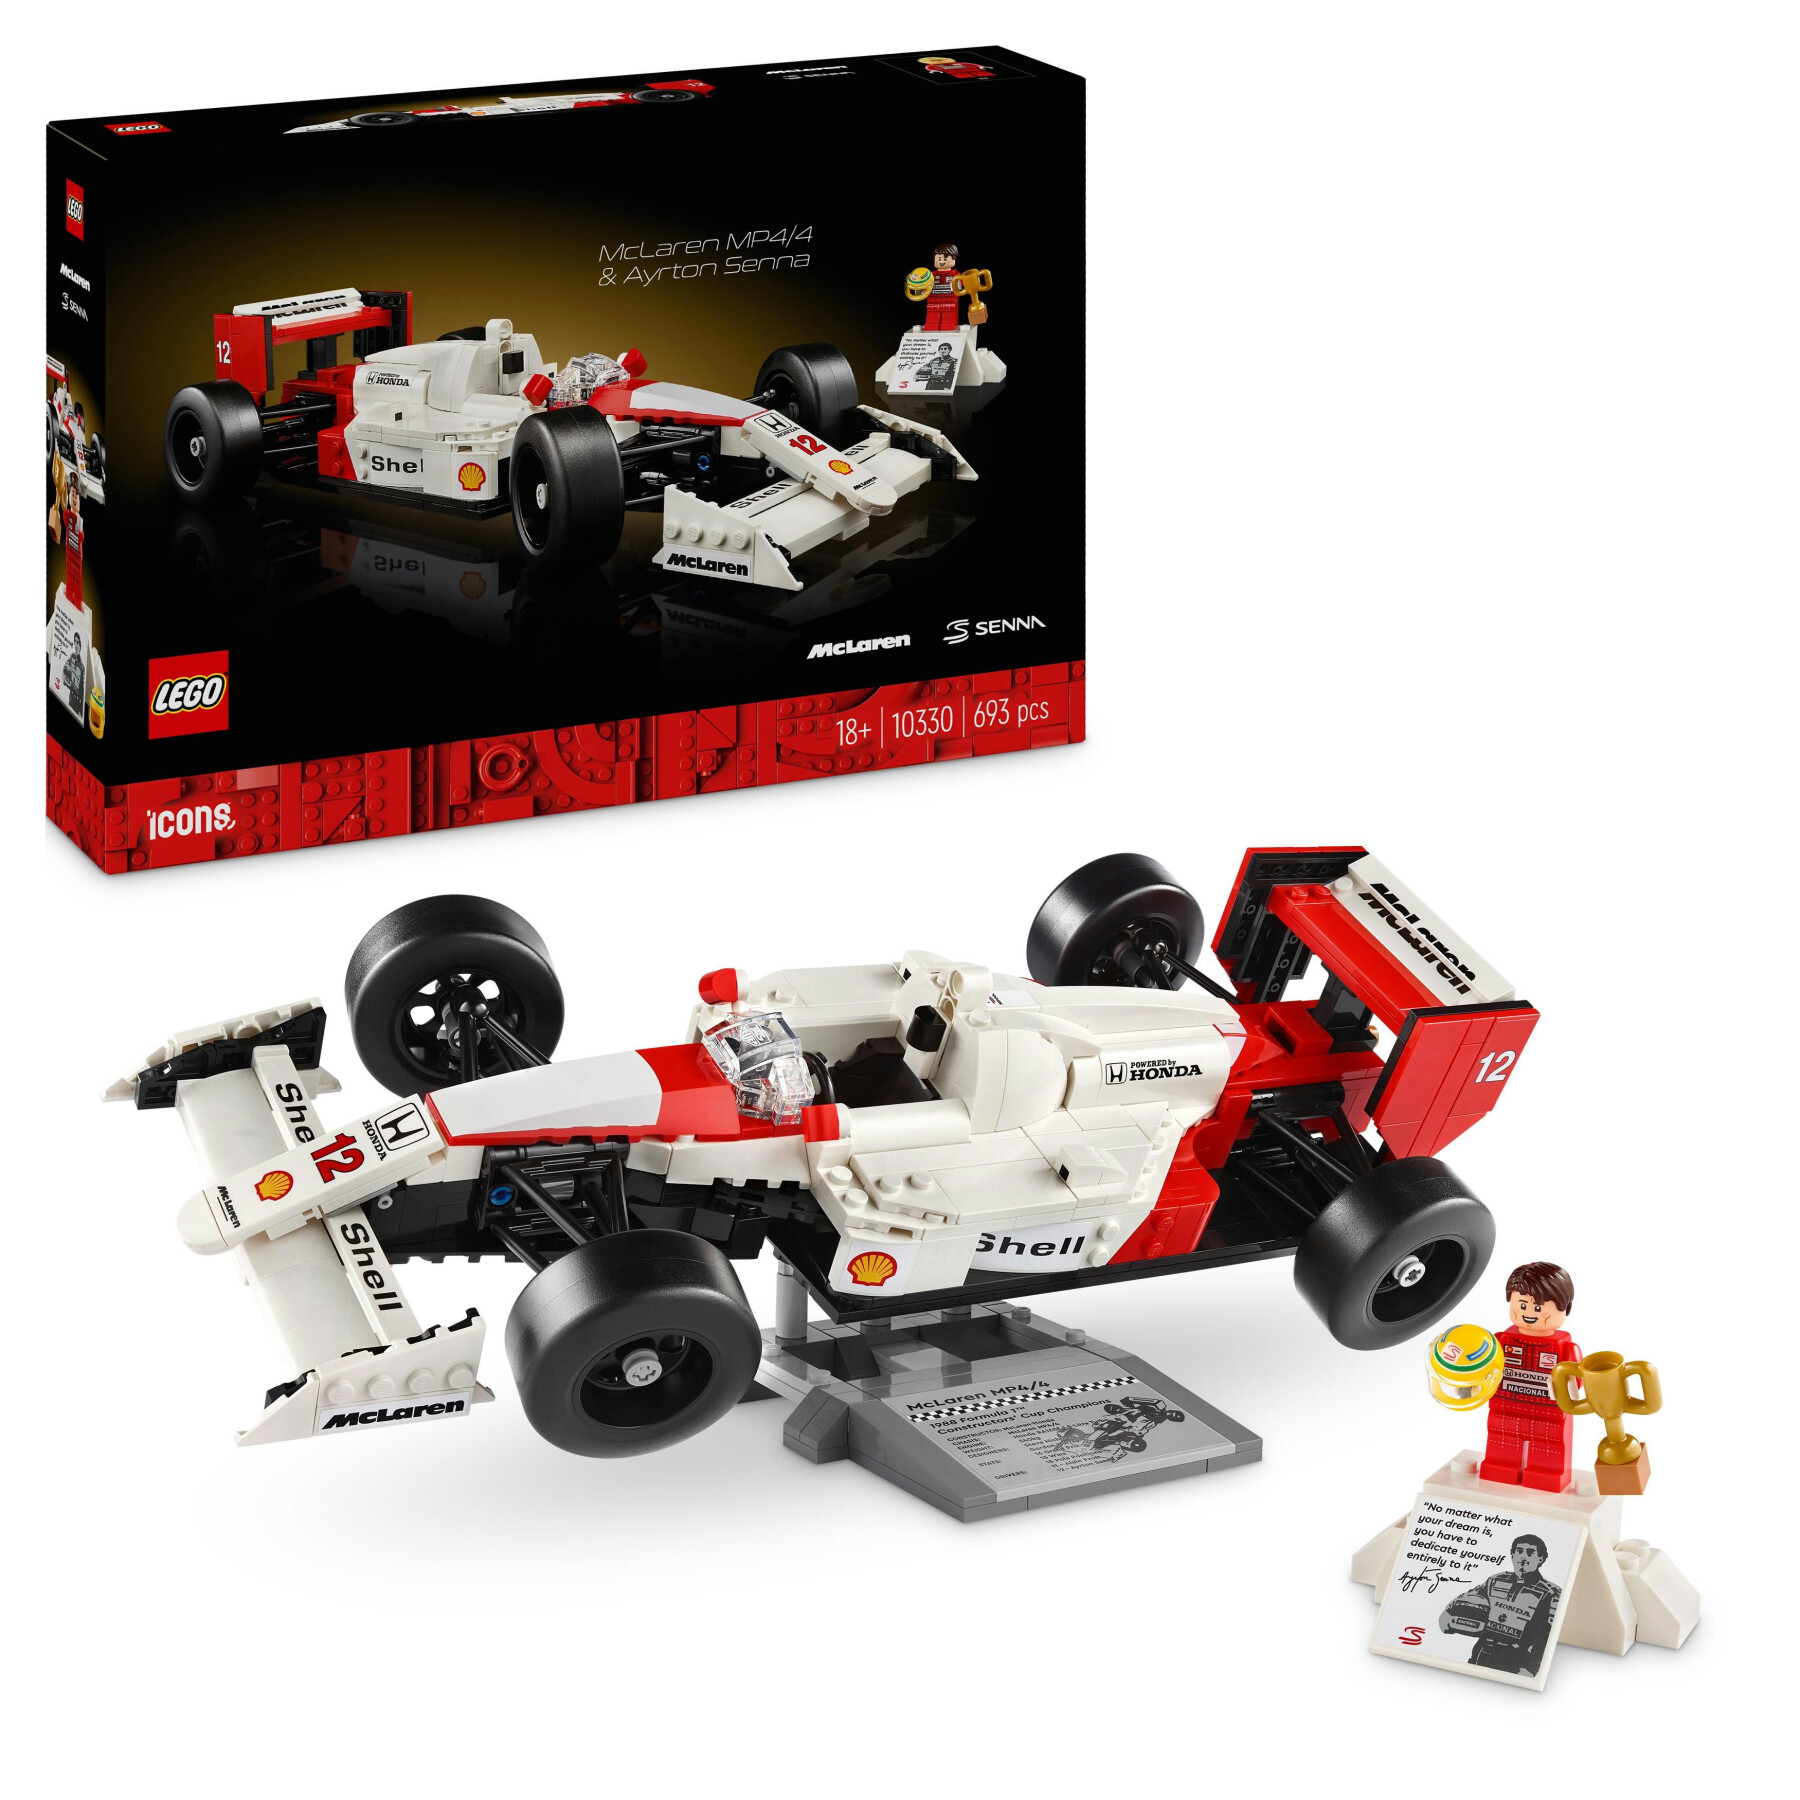 Lego icons 10330 mclaren mp4/4 e ayrton senna, modellino da costruire di auto da corsa f1 con minifigure, regalo per adulti - Lego, LEGO ICONS